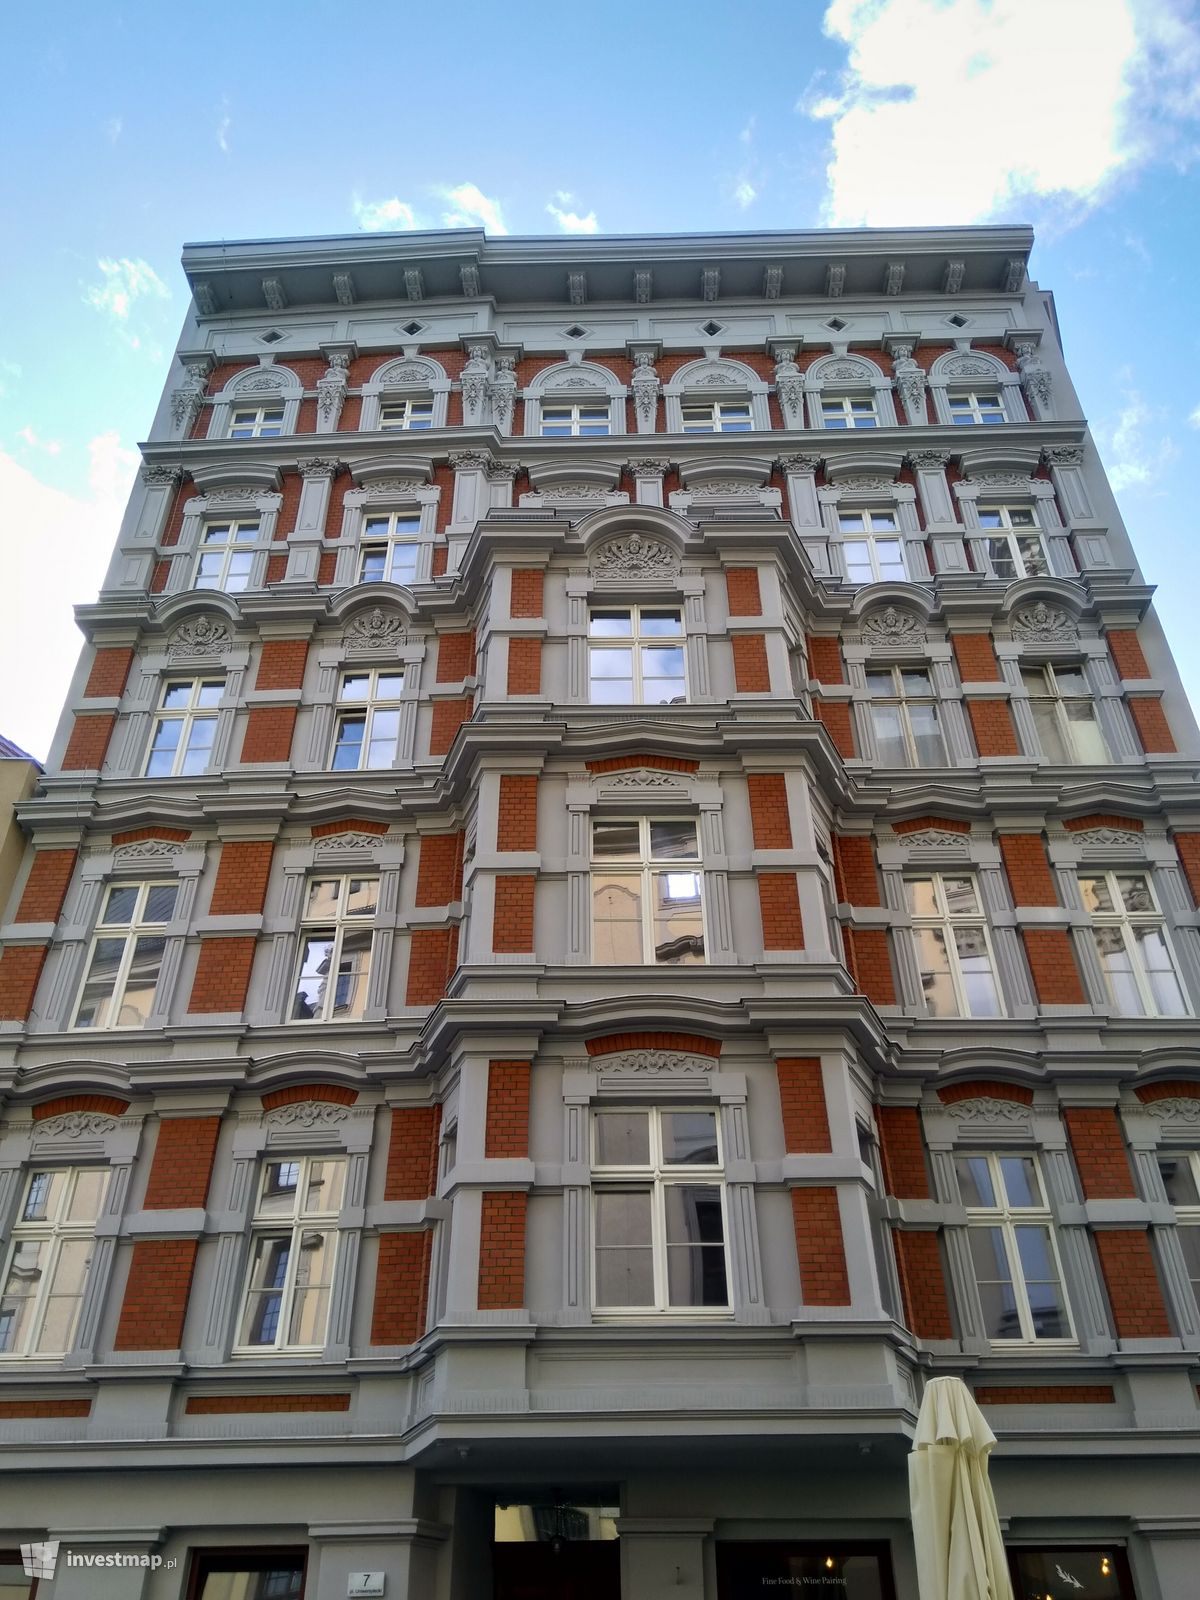 Zdjęcie Remont i przebudowa budynku mieszkalnego przy placu Uniwersyteckim 7 fot. Orzech 